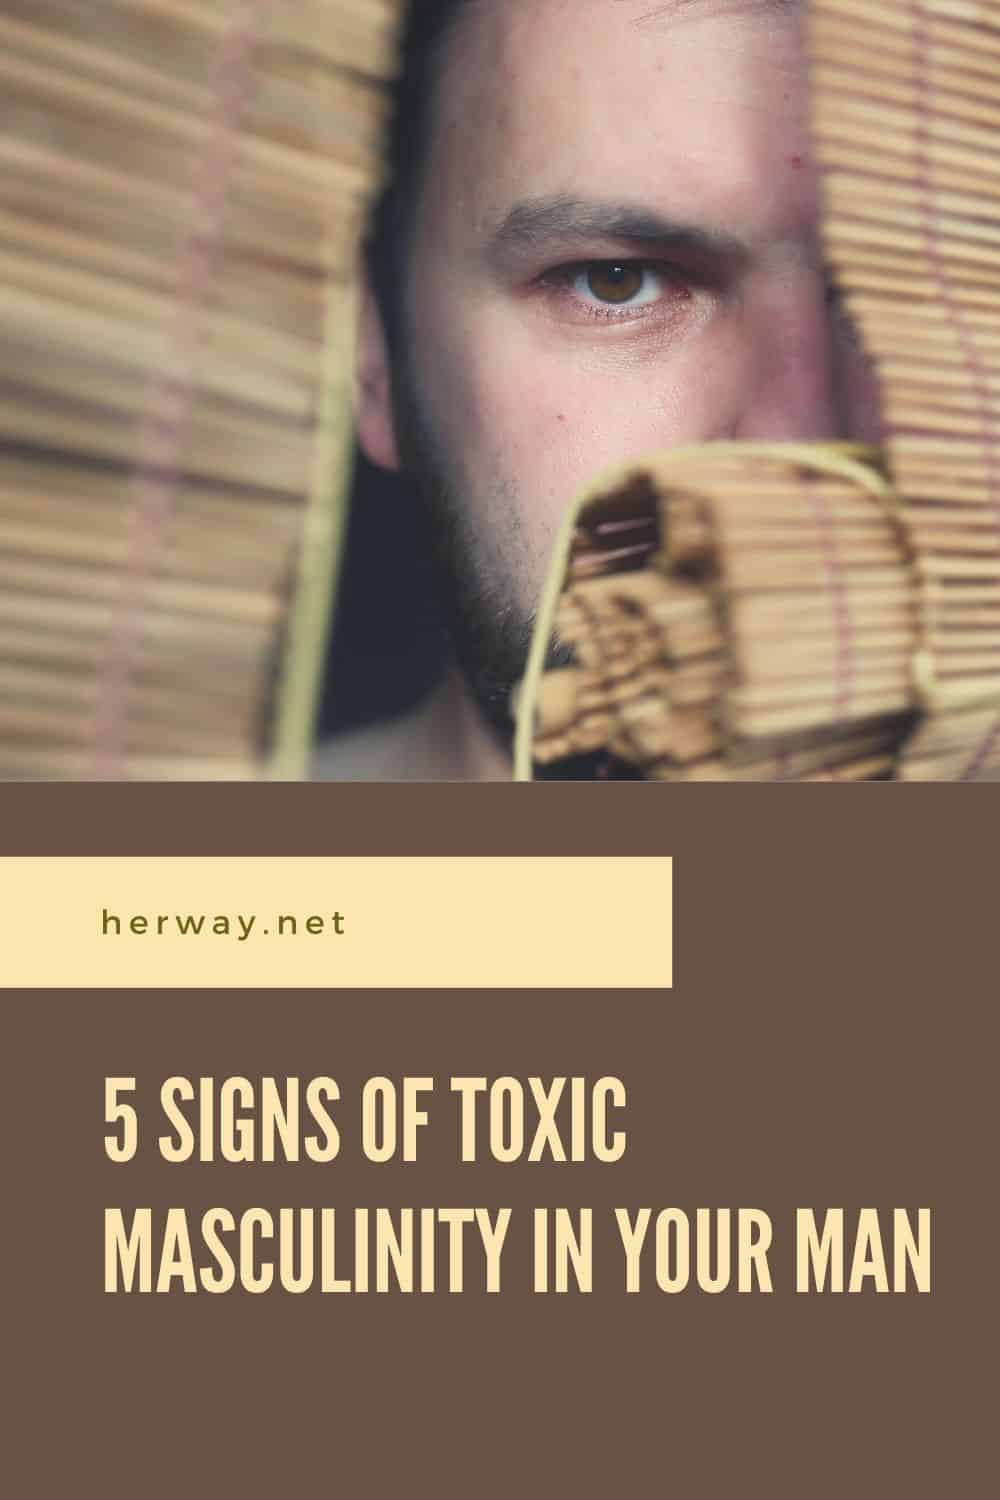 5 segni di mascolinità tossica nel vostro uomo